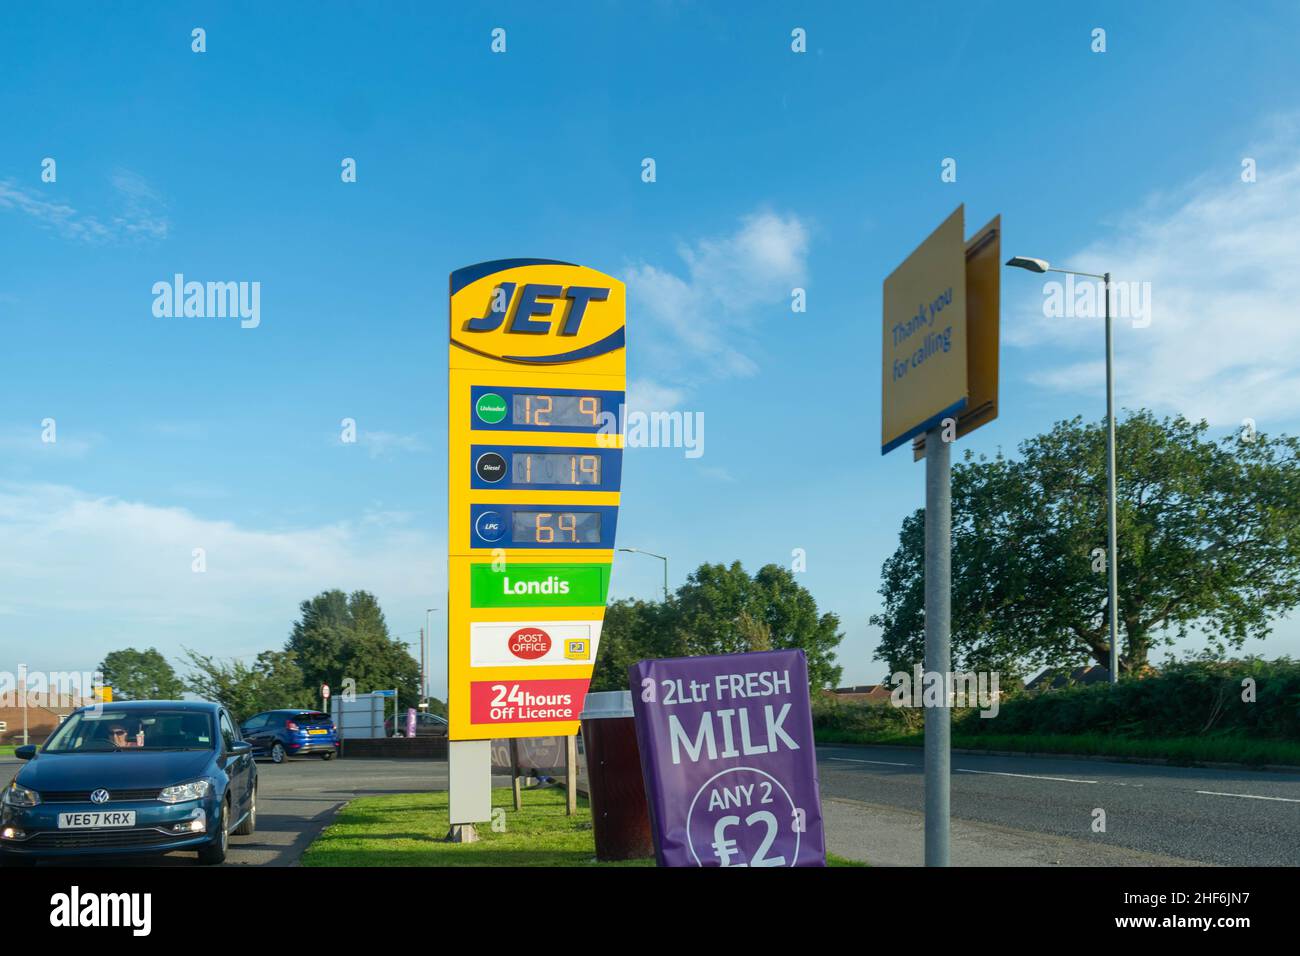 Durham, UK - 23rd agosto 2019: Stazione di benzina e diesel Jet, display pubblicitario che mostra il costo del carburante. Concetto di aumento del prezzo del carburante Foto Stock